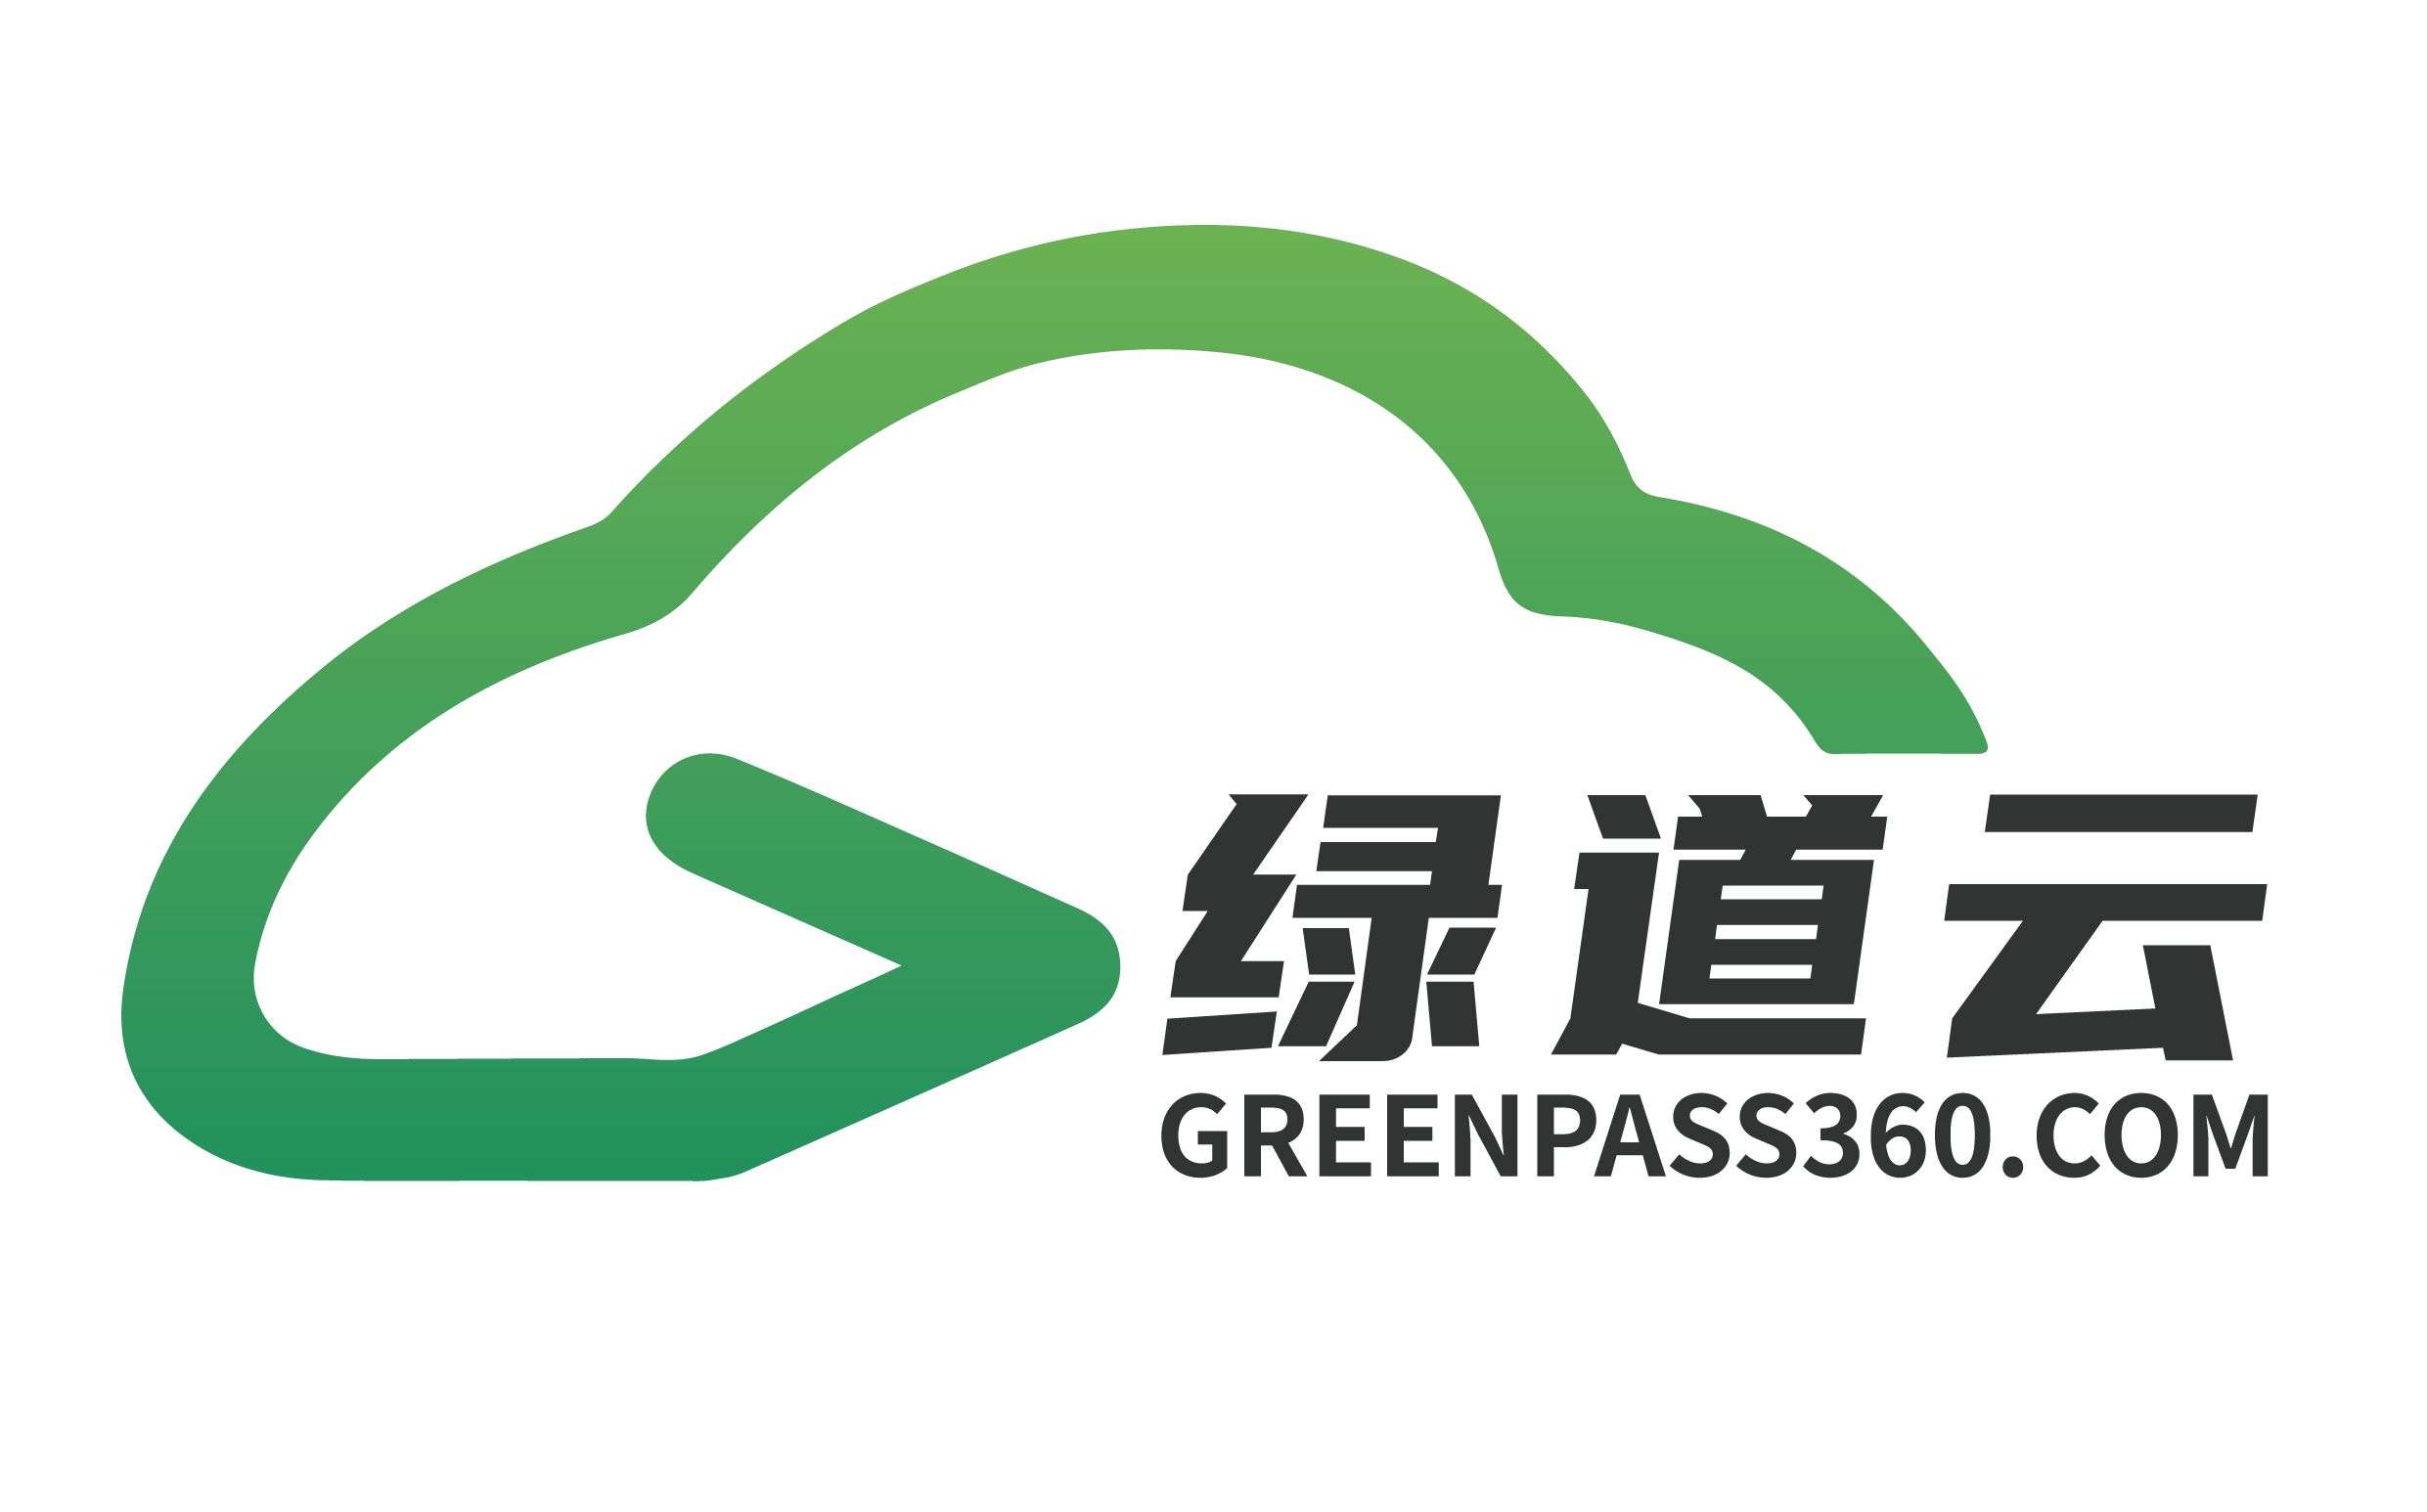 Greenpass Cloud Technology Co.,ltd